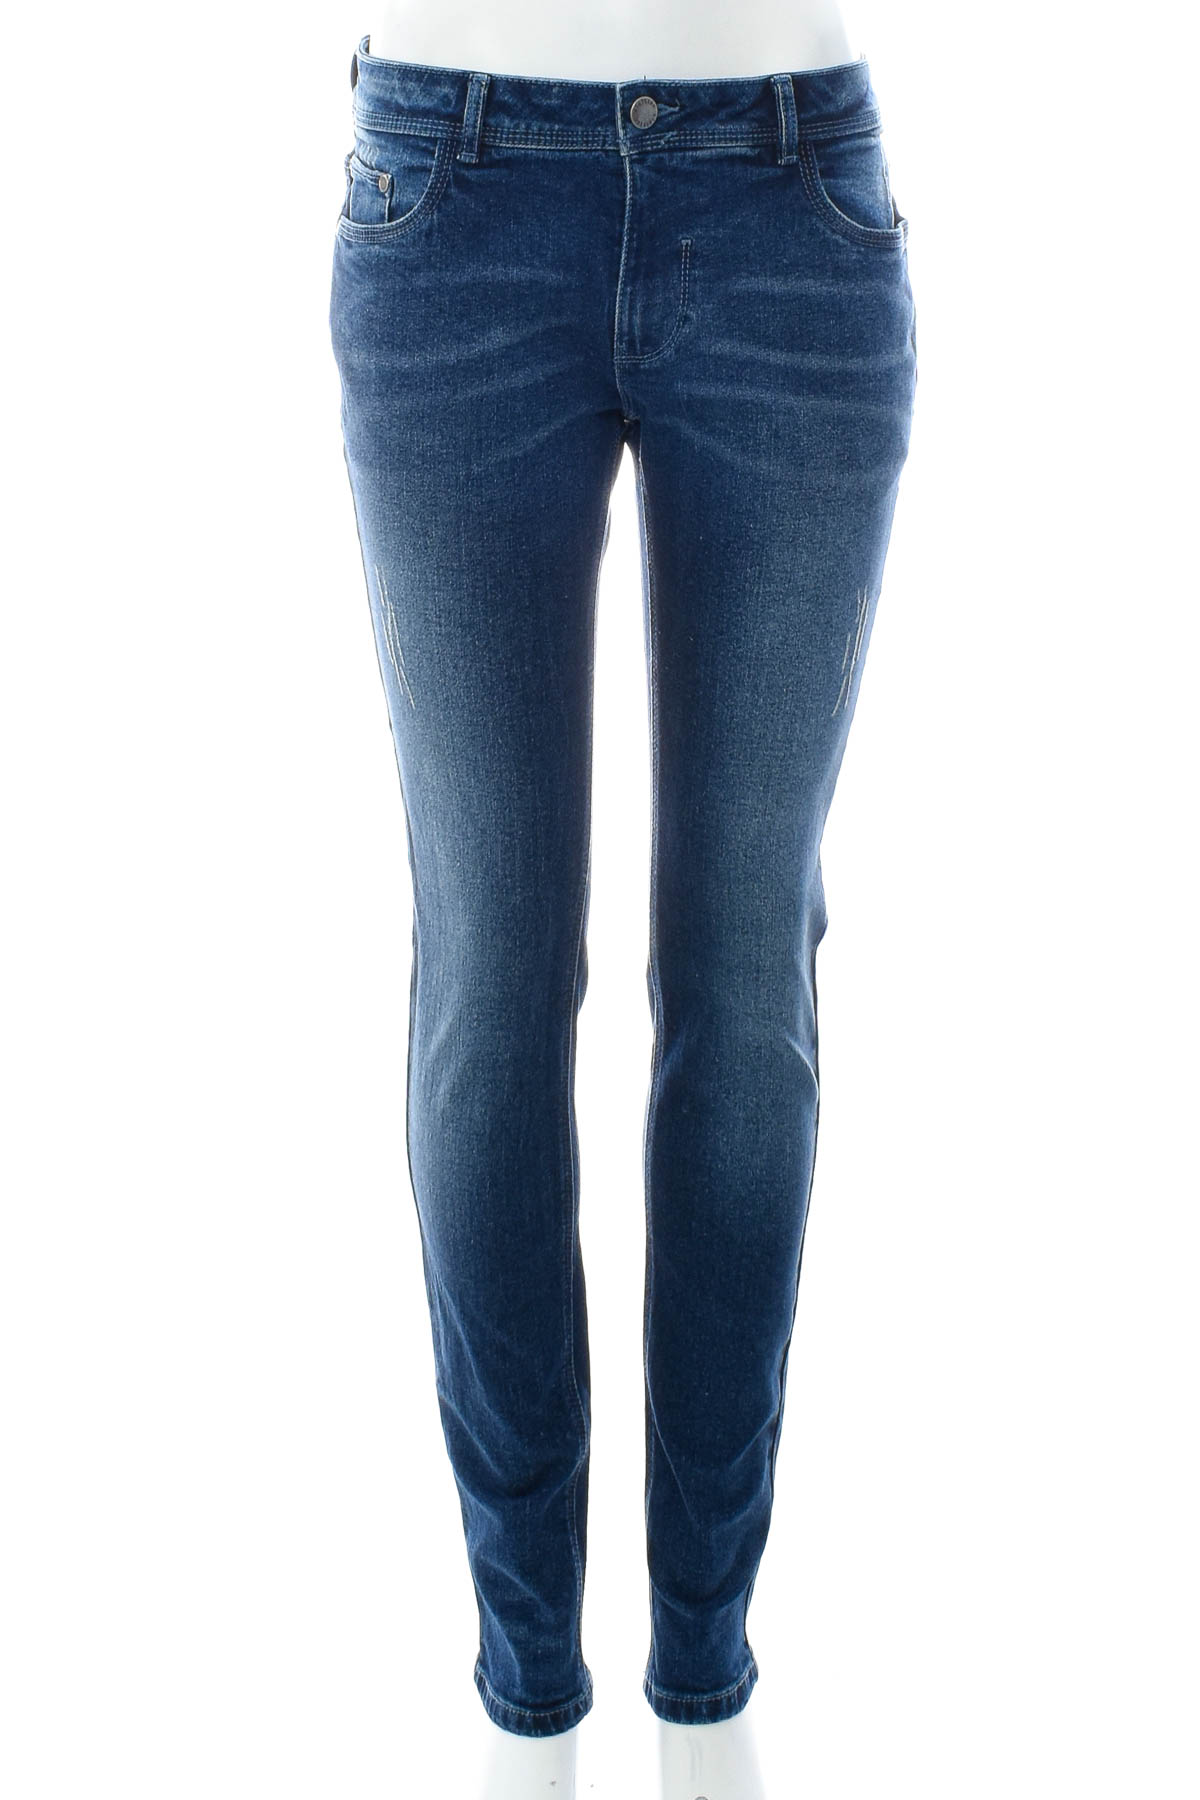 Women's jeans - Nielsson - 0